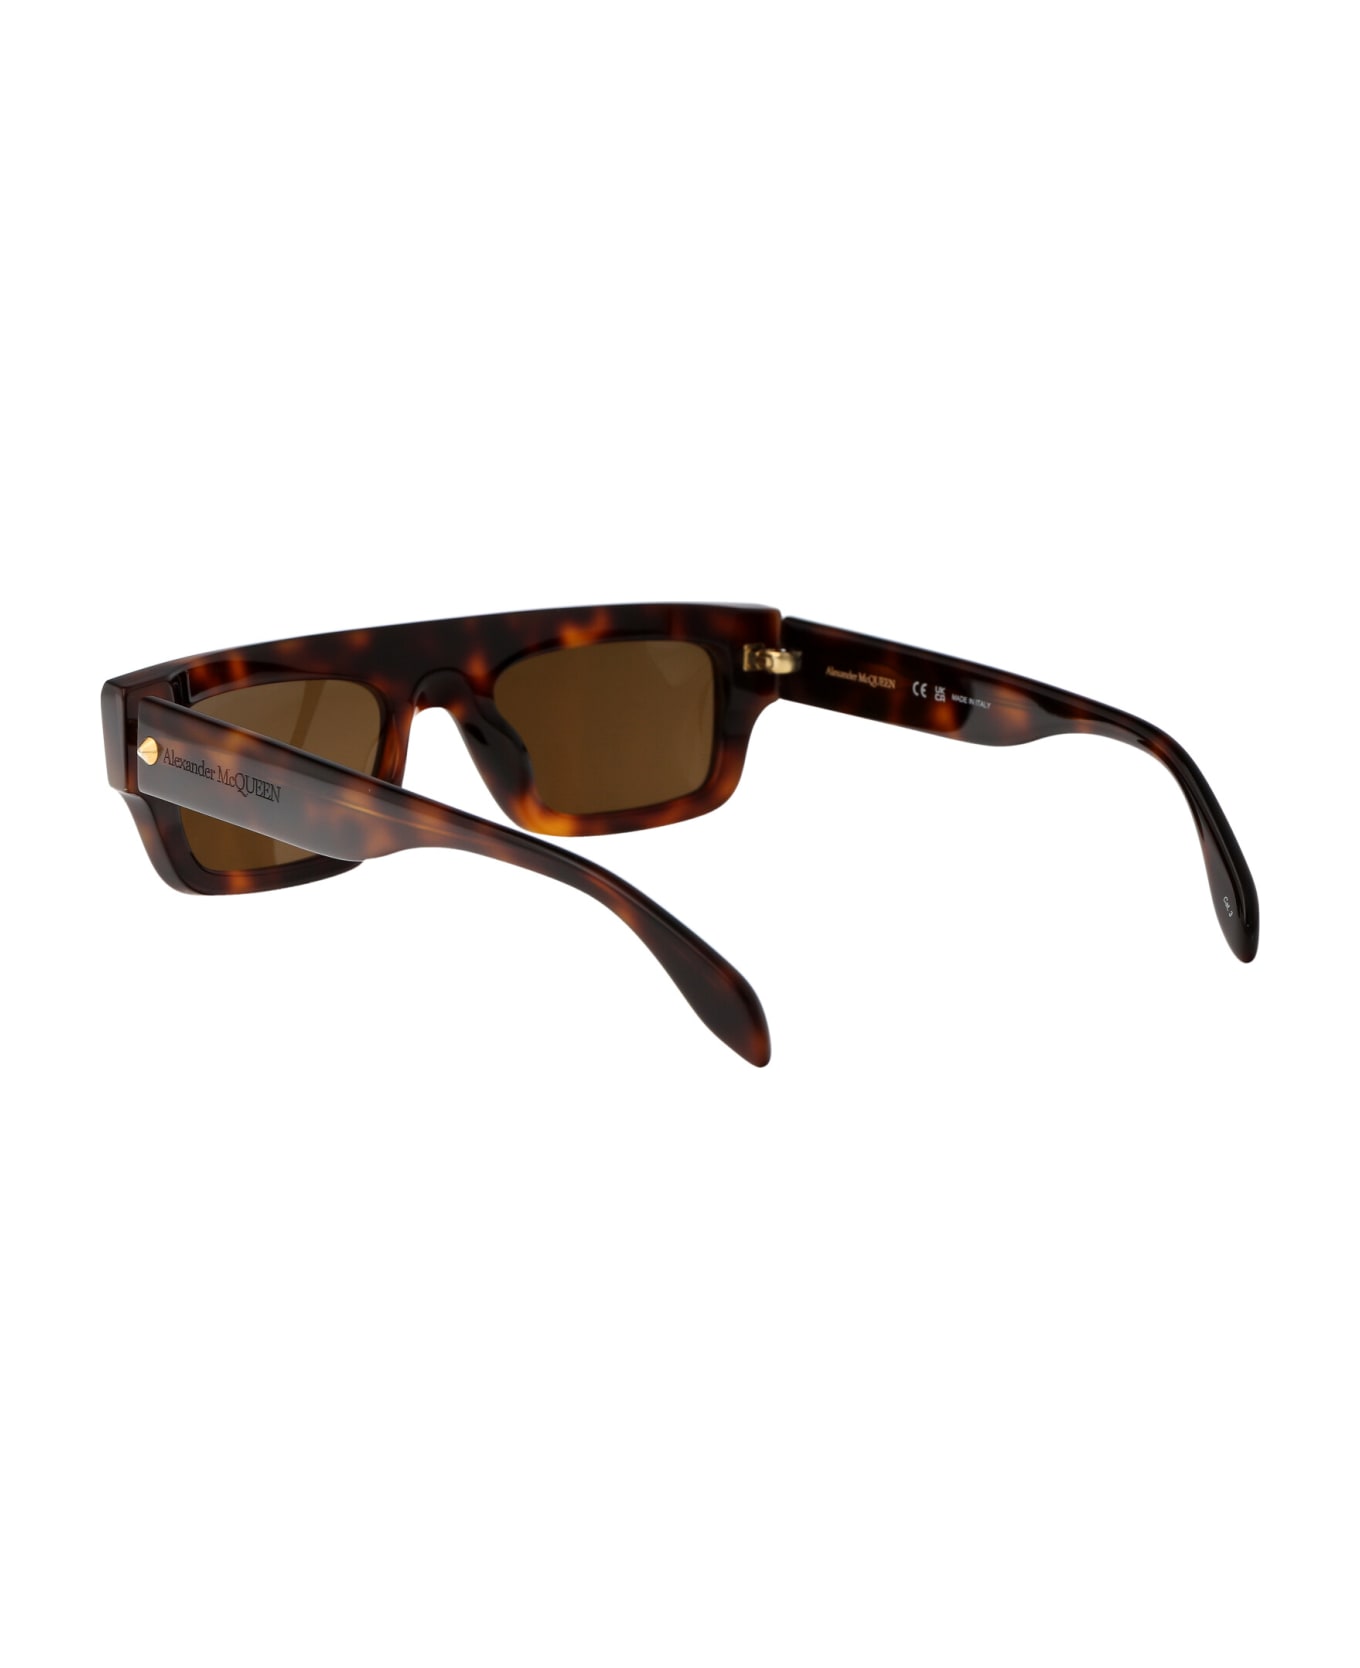 Alexander McQueen Eyewear Am0427s Sunglasses - 002 HAVANA HAVANA BROWN